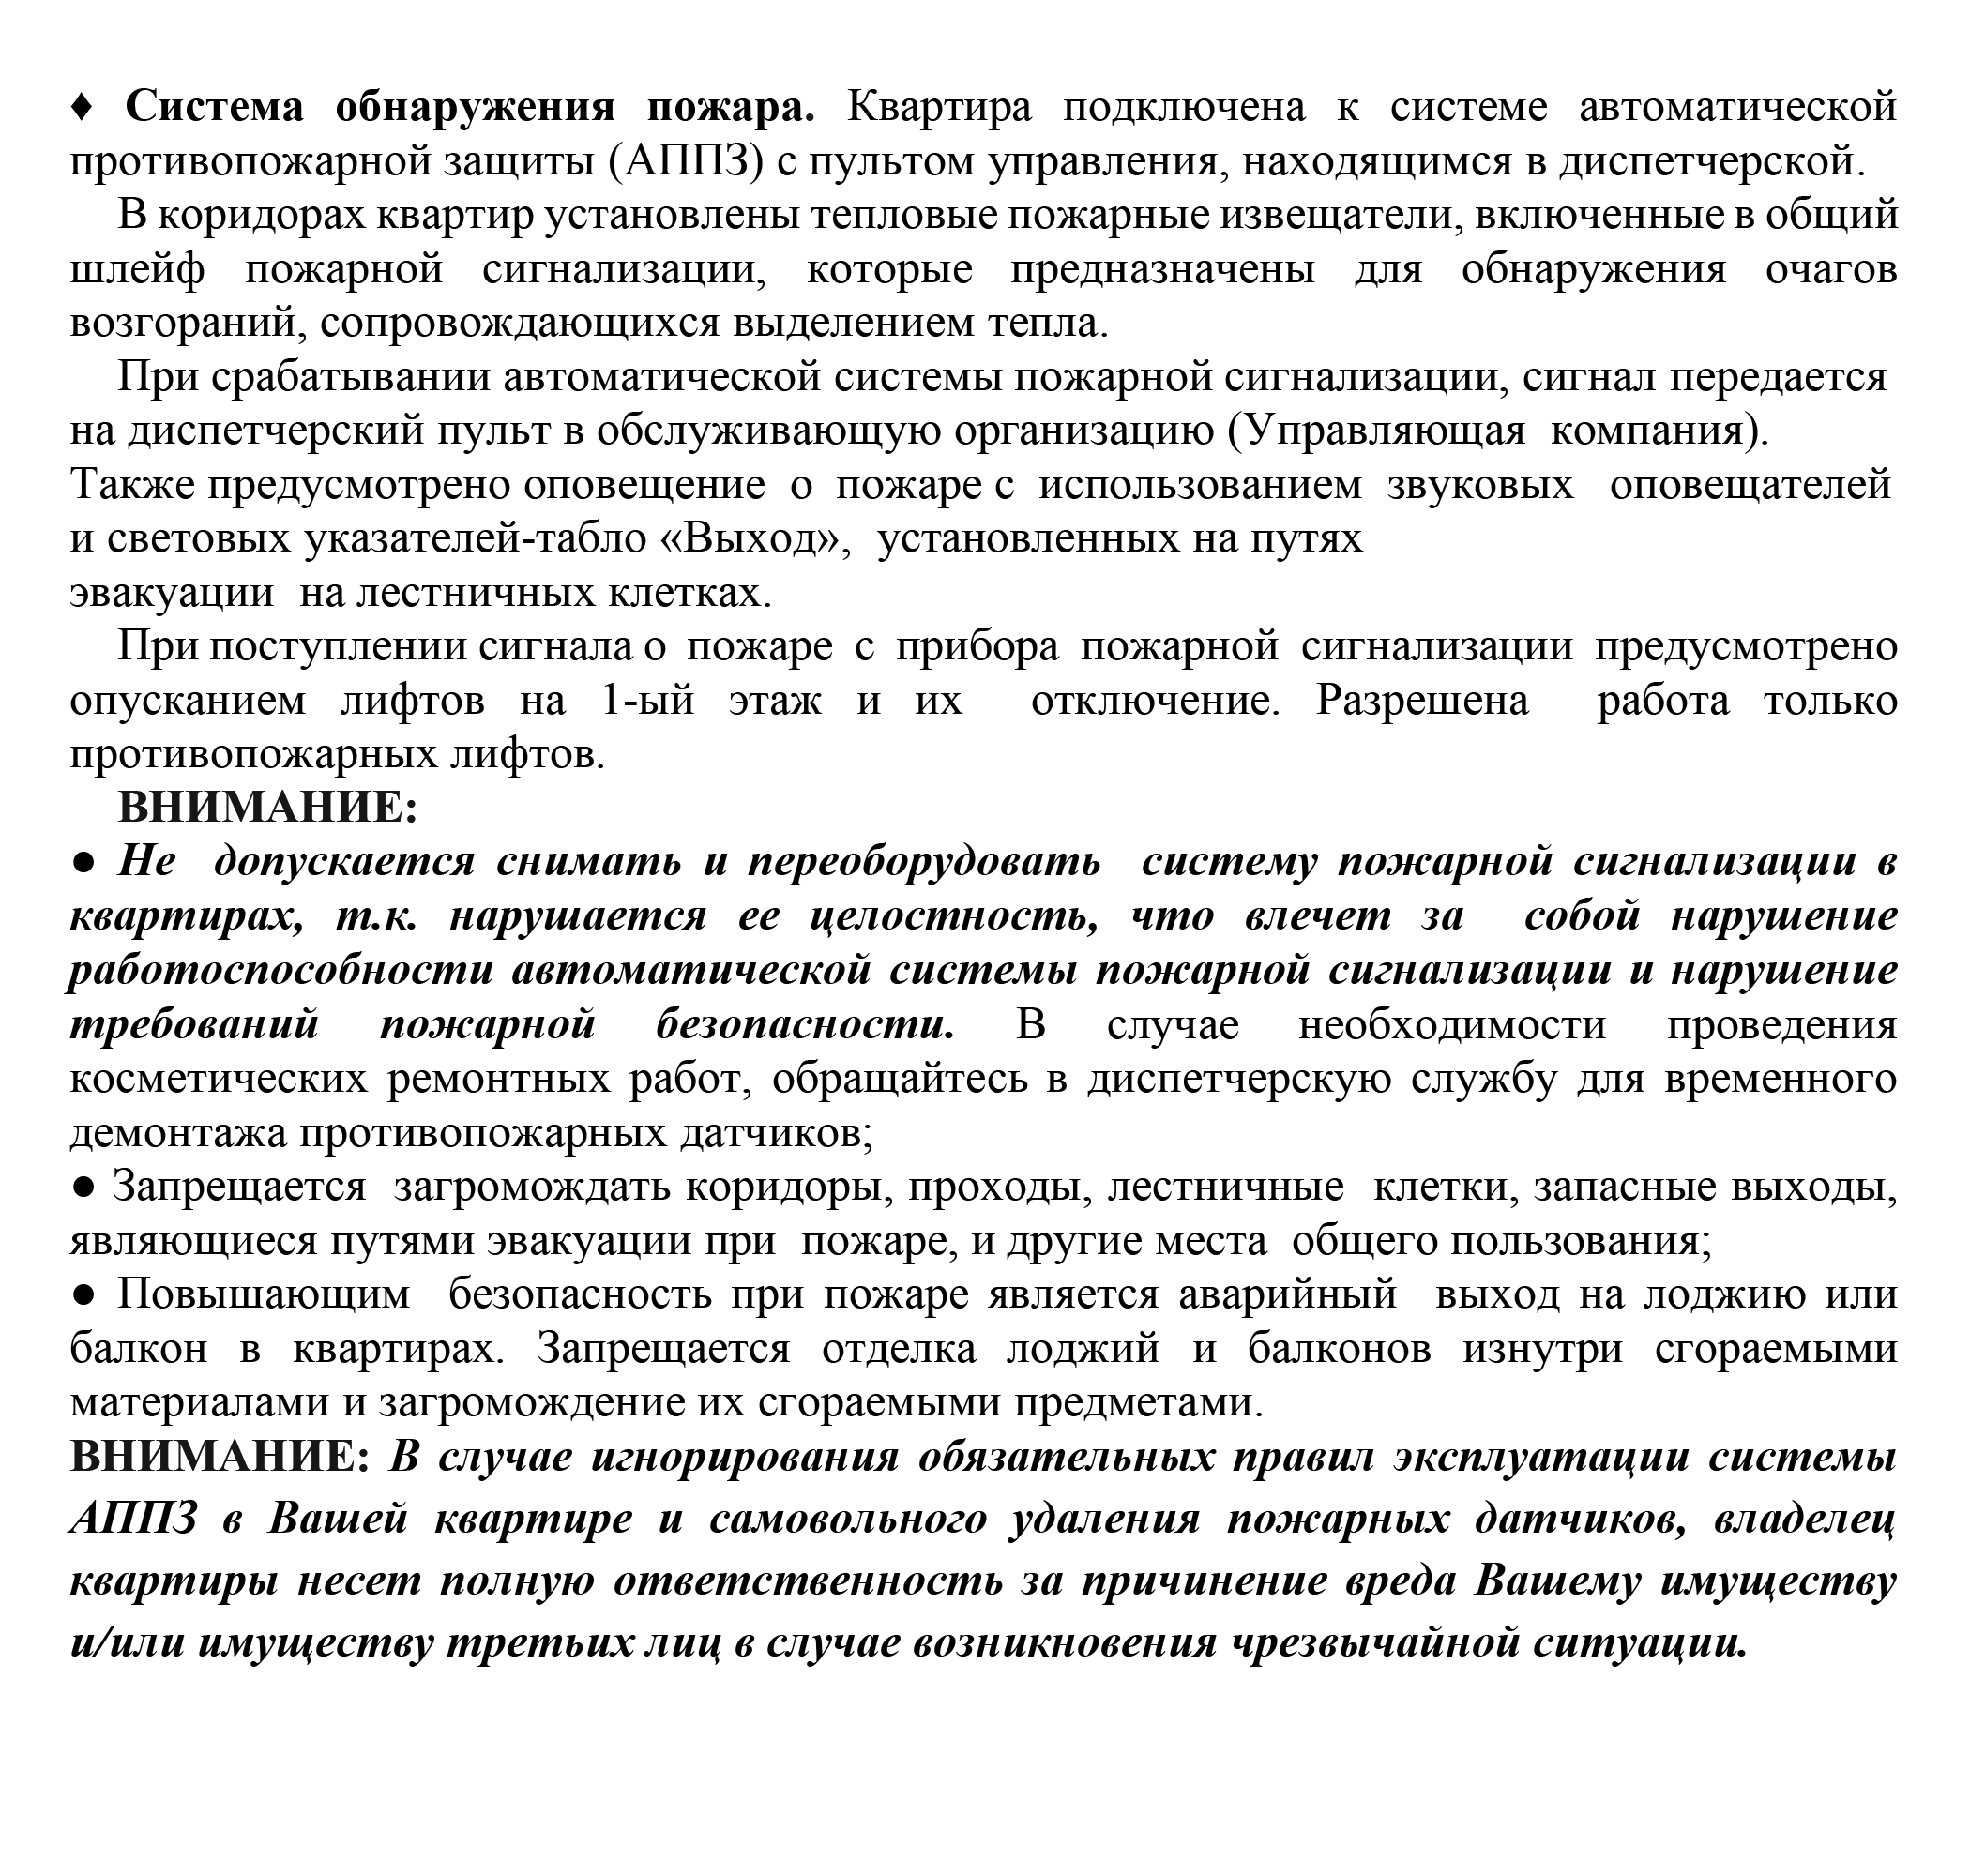 В этой же инструкции описано, как работает противопожарная система, и даны указания для жильцов. Источник: etalongroup.ru